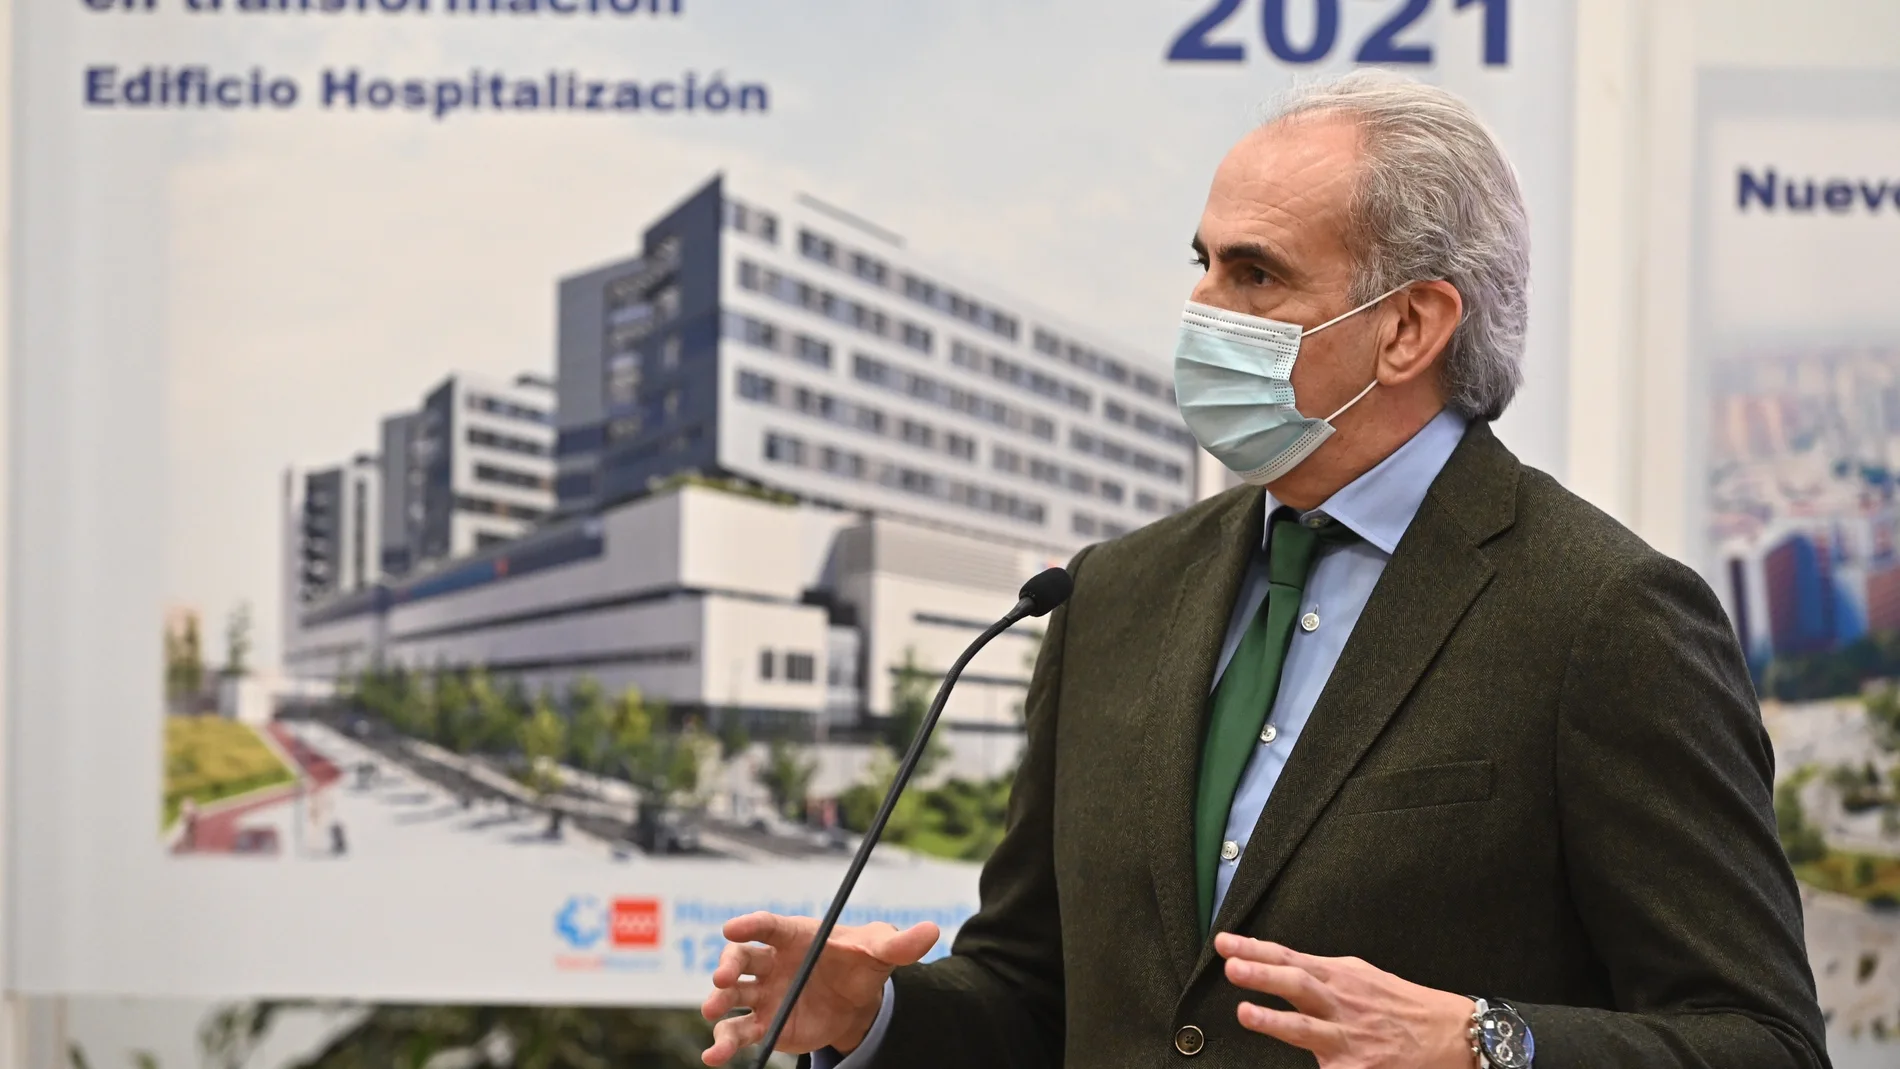 El consejero de Sanidad de la Comunidad de Madrid, Enrique Ruiz Escudero, durante su intervención en la presentación del nuevo edificio de hospitalización y técnico asistencial del Hospital Universitario 12 de Octubre